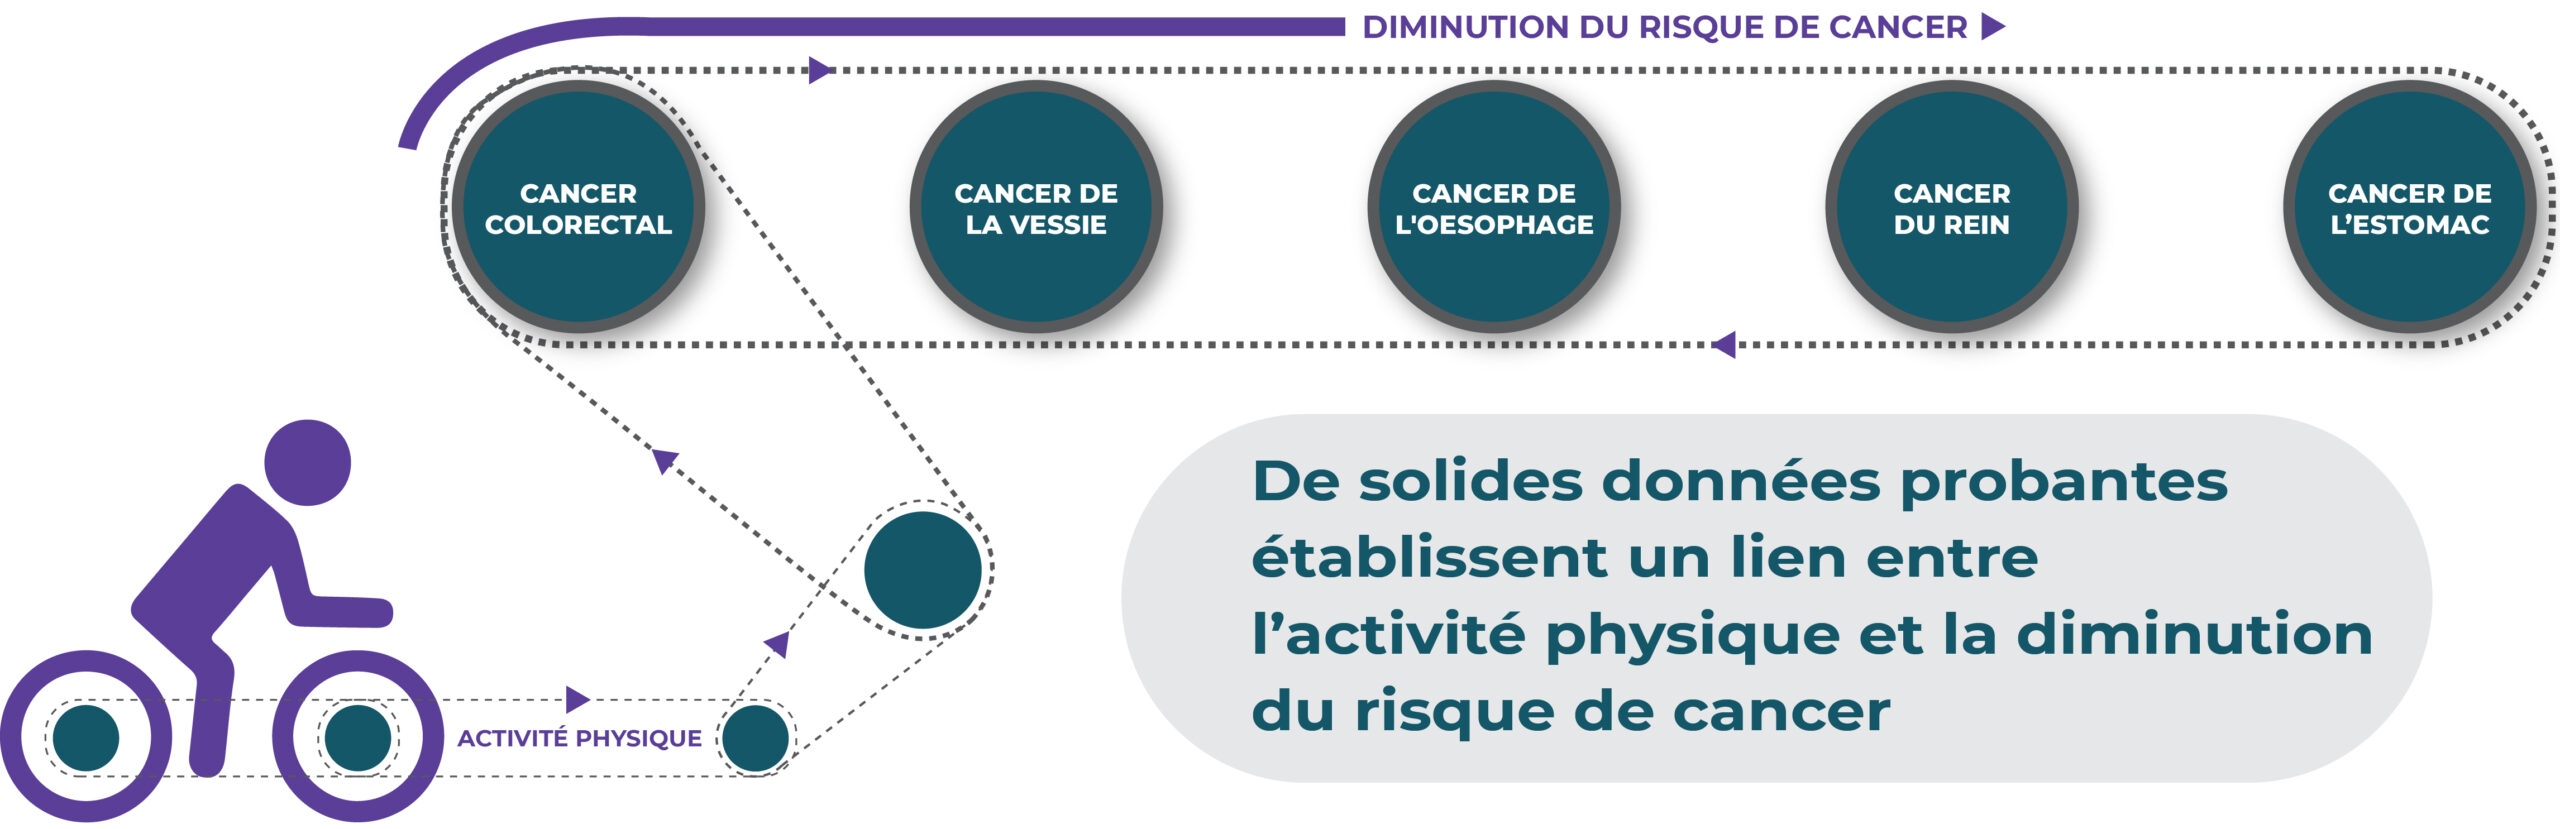 De solides données probantes établissent un lien entre l’activité physique et la diminution du risque de cancer.